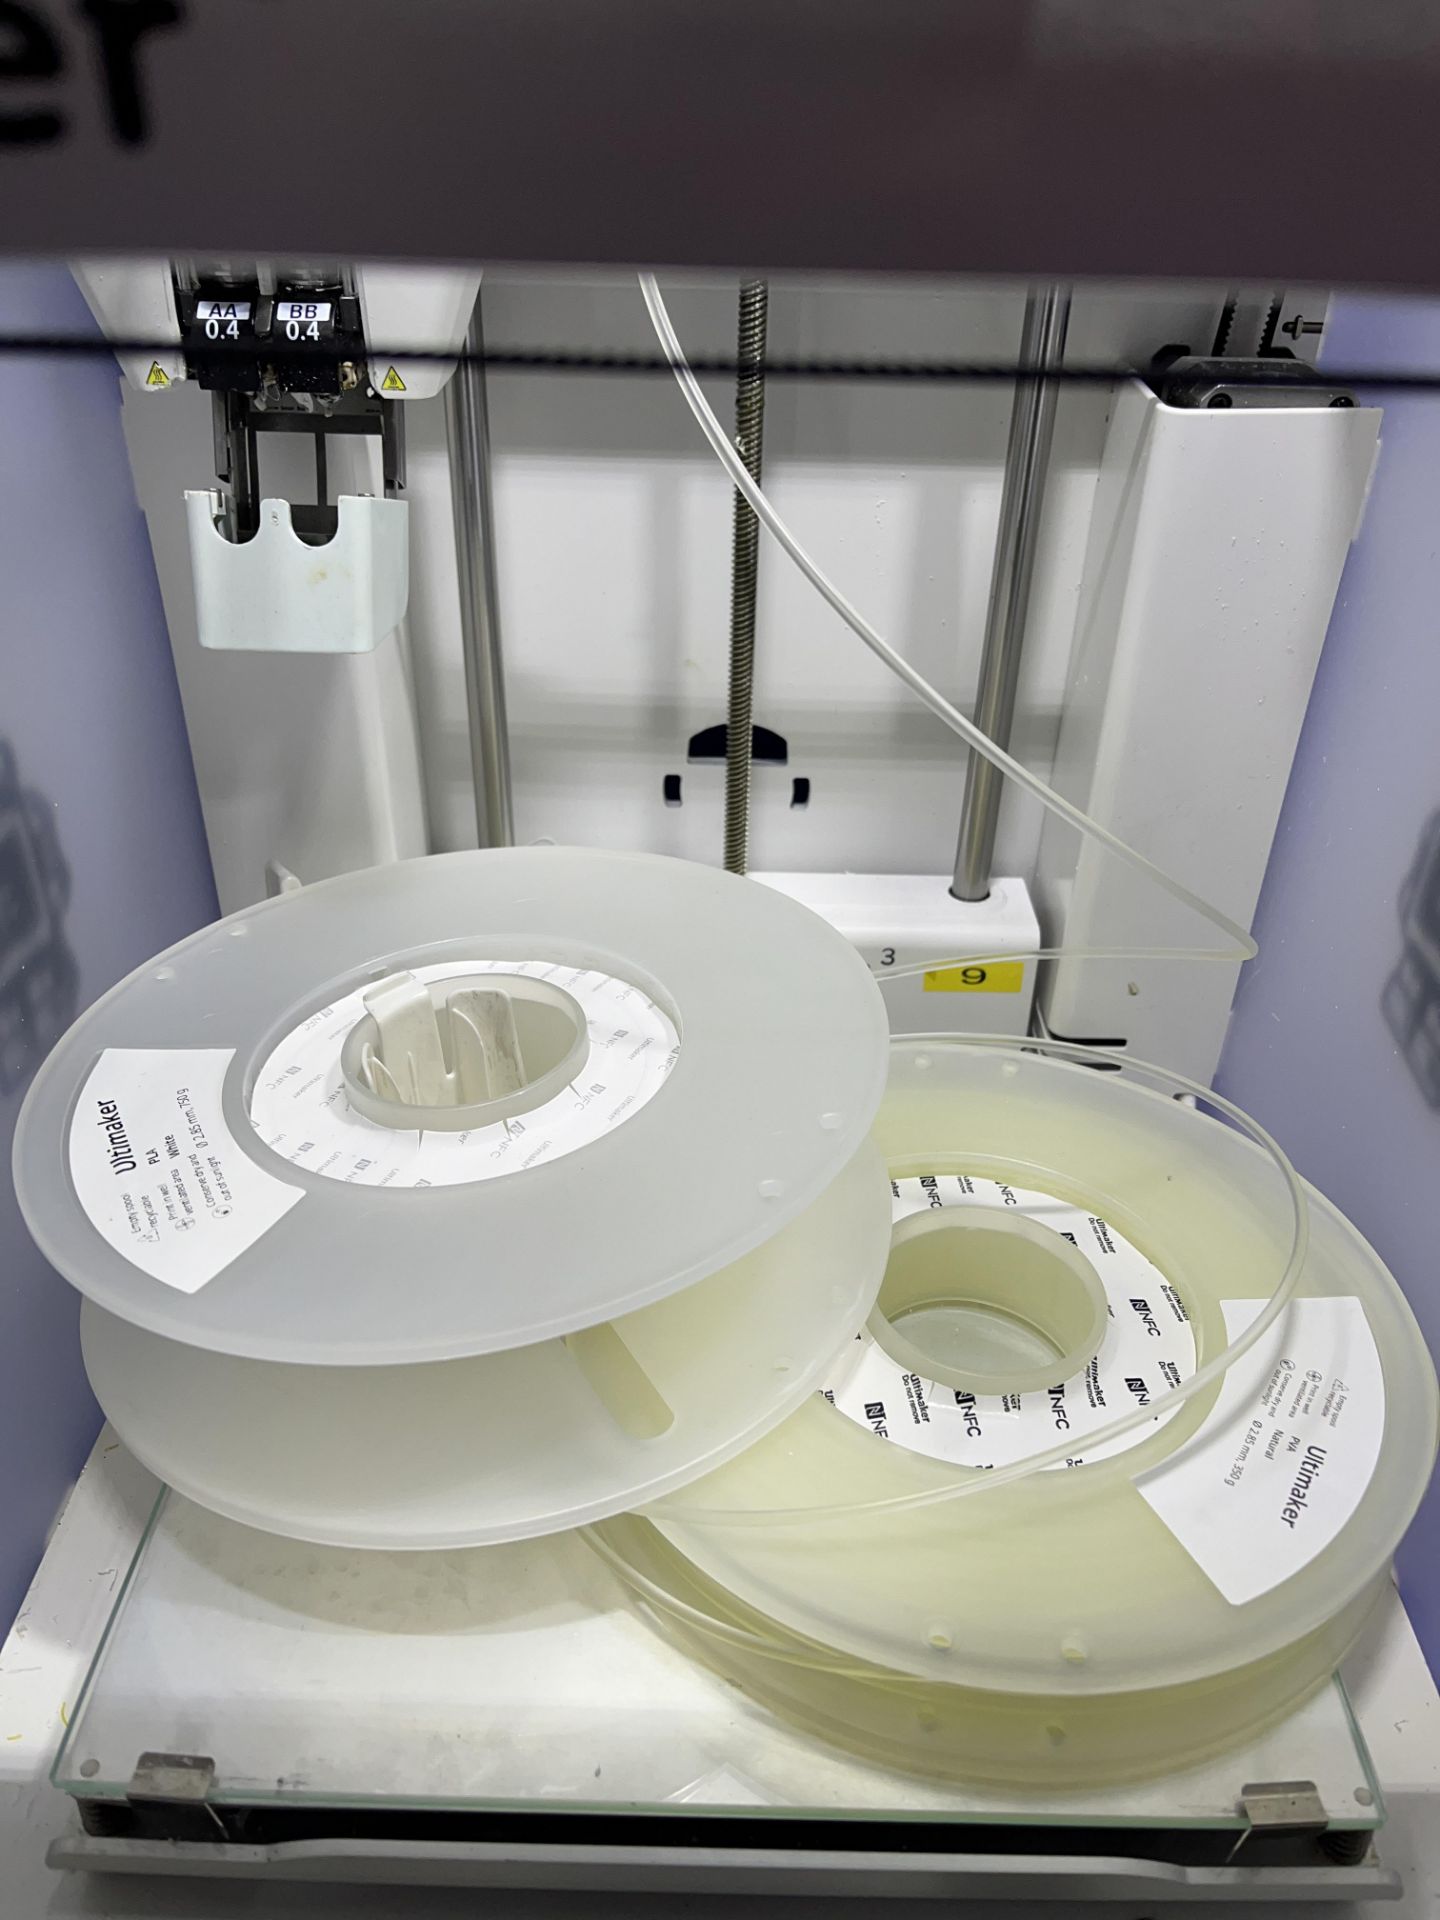 Ultimaker Model 3 3D printer - Image 2 of 5